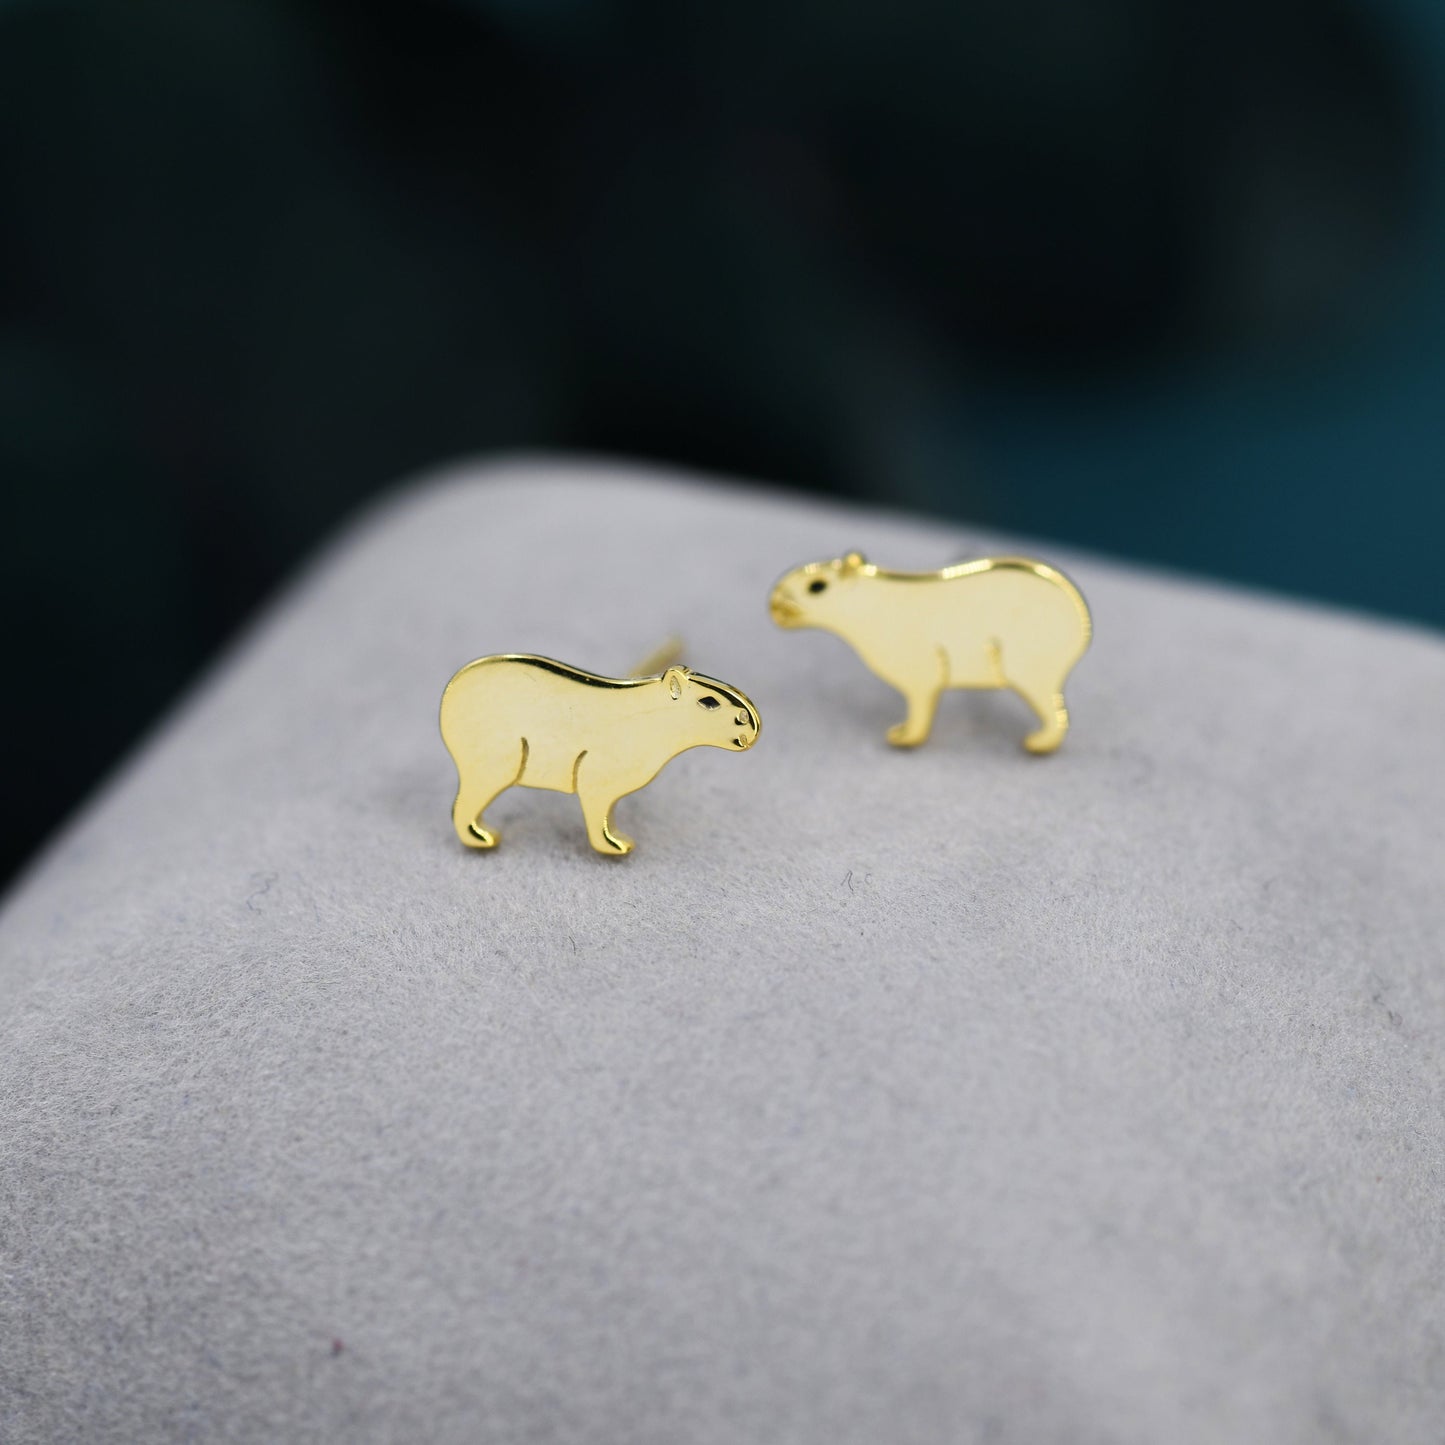 Capybara Stud Earrings in Sterling Silver - Cute Animal Earrings  - Pantanal Animal - Fun, Whimsical